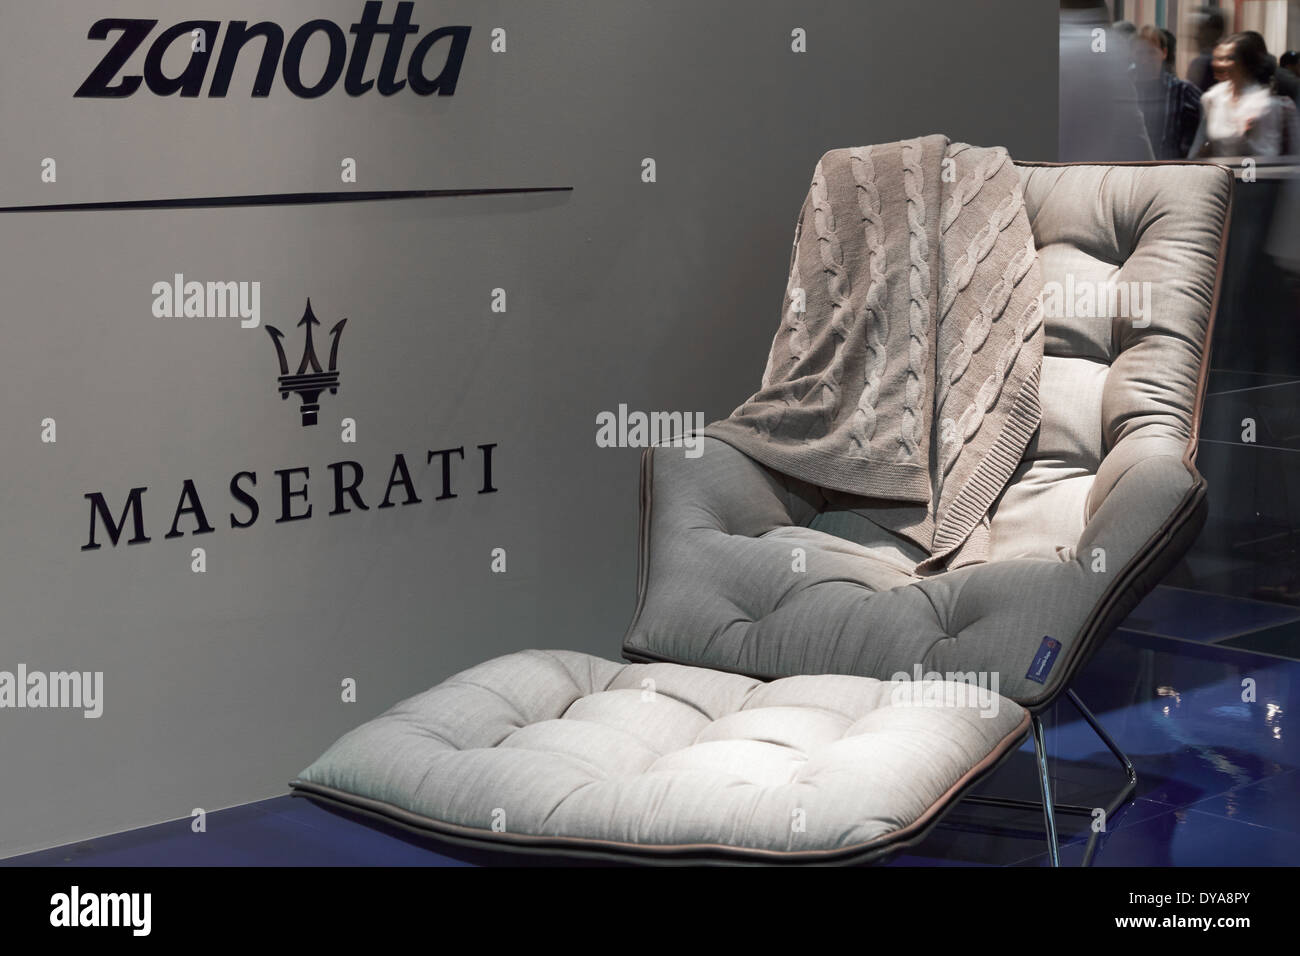 Zanotta stand Maserati lors de Salone del Mobile, salon international du meuble de Milan Banque D'Images